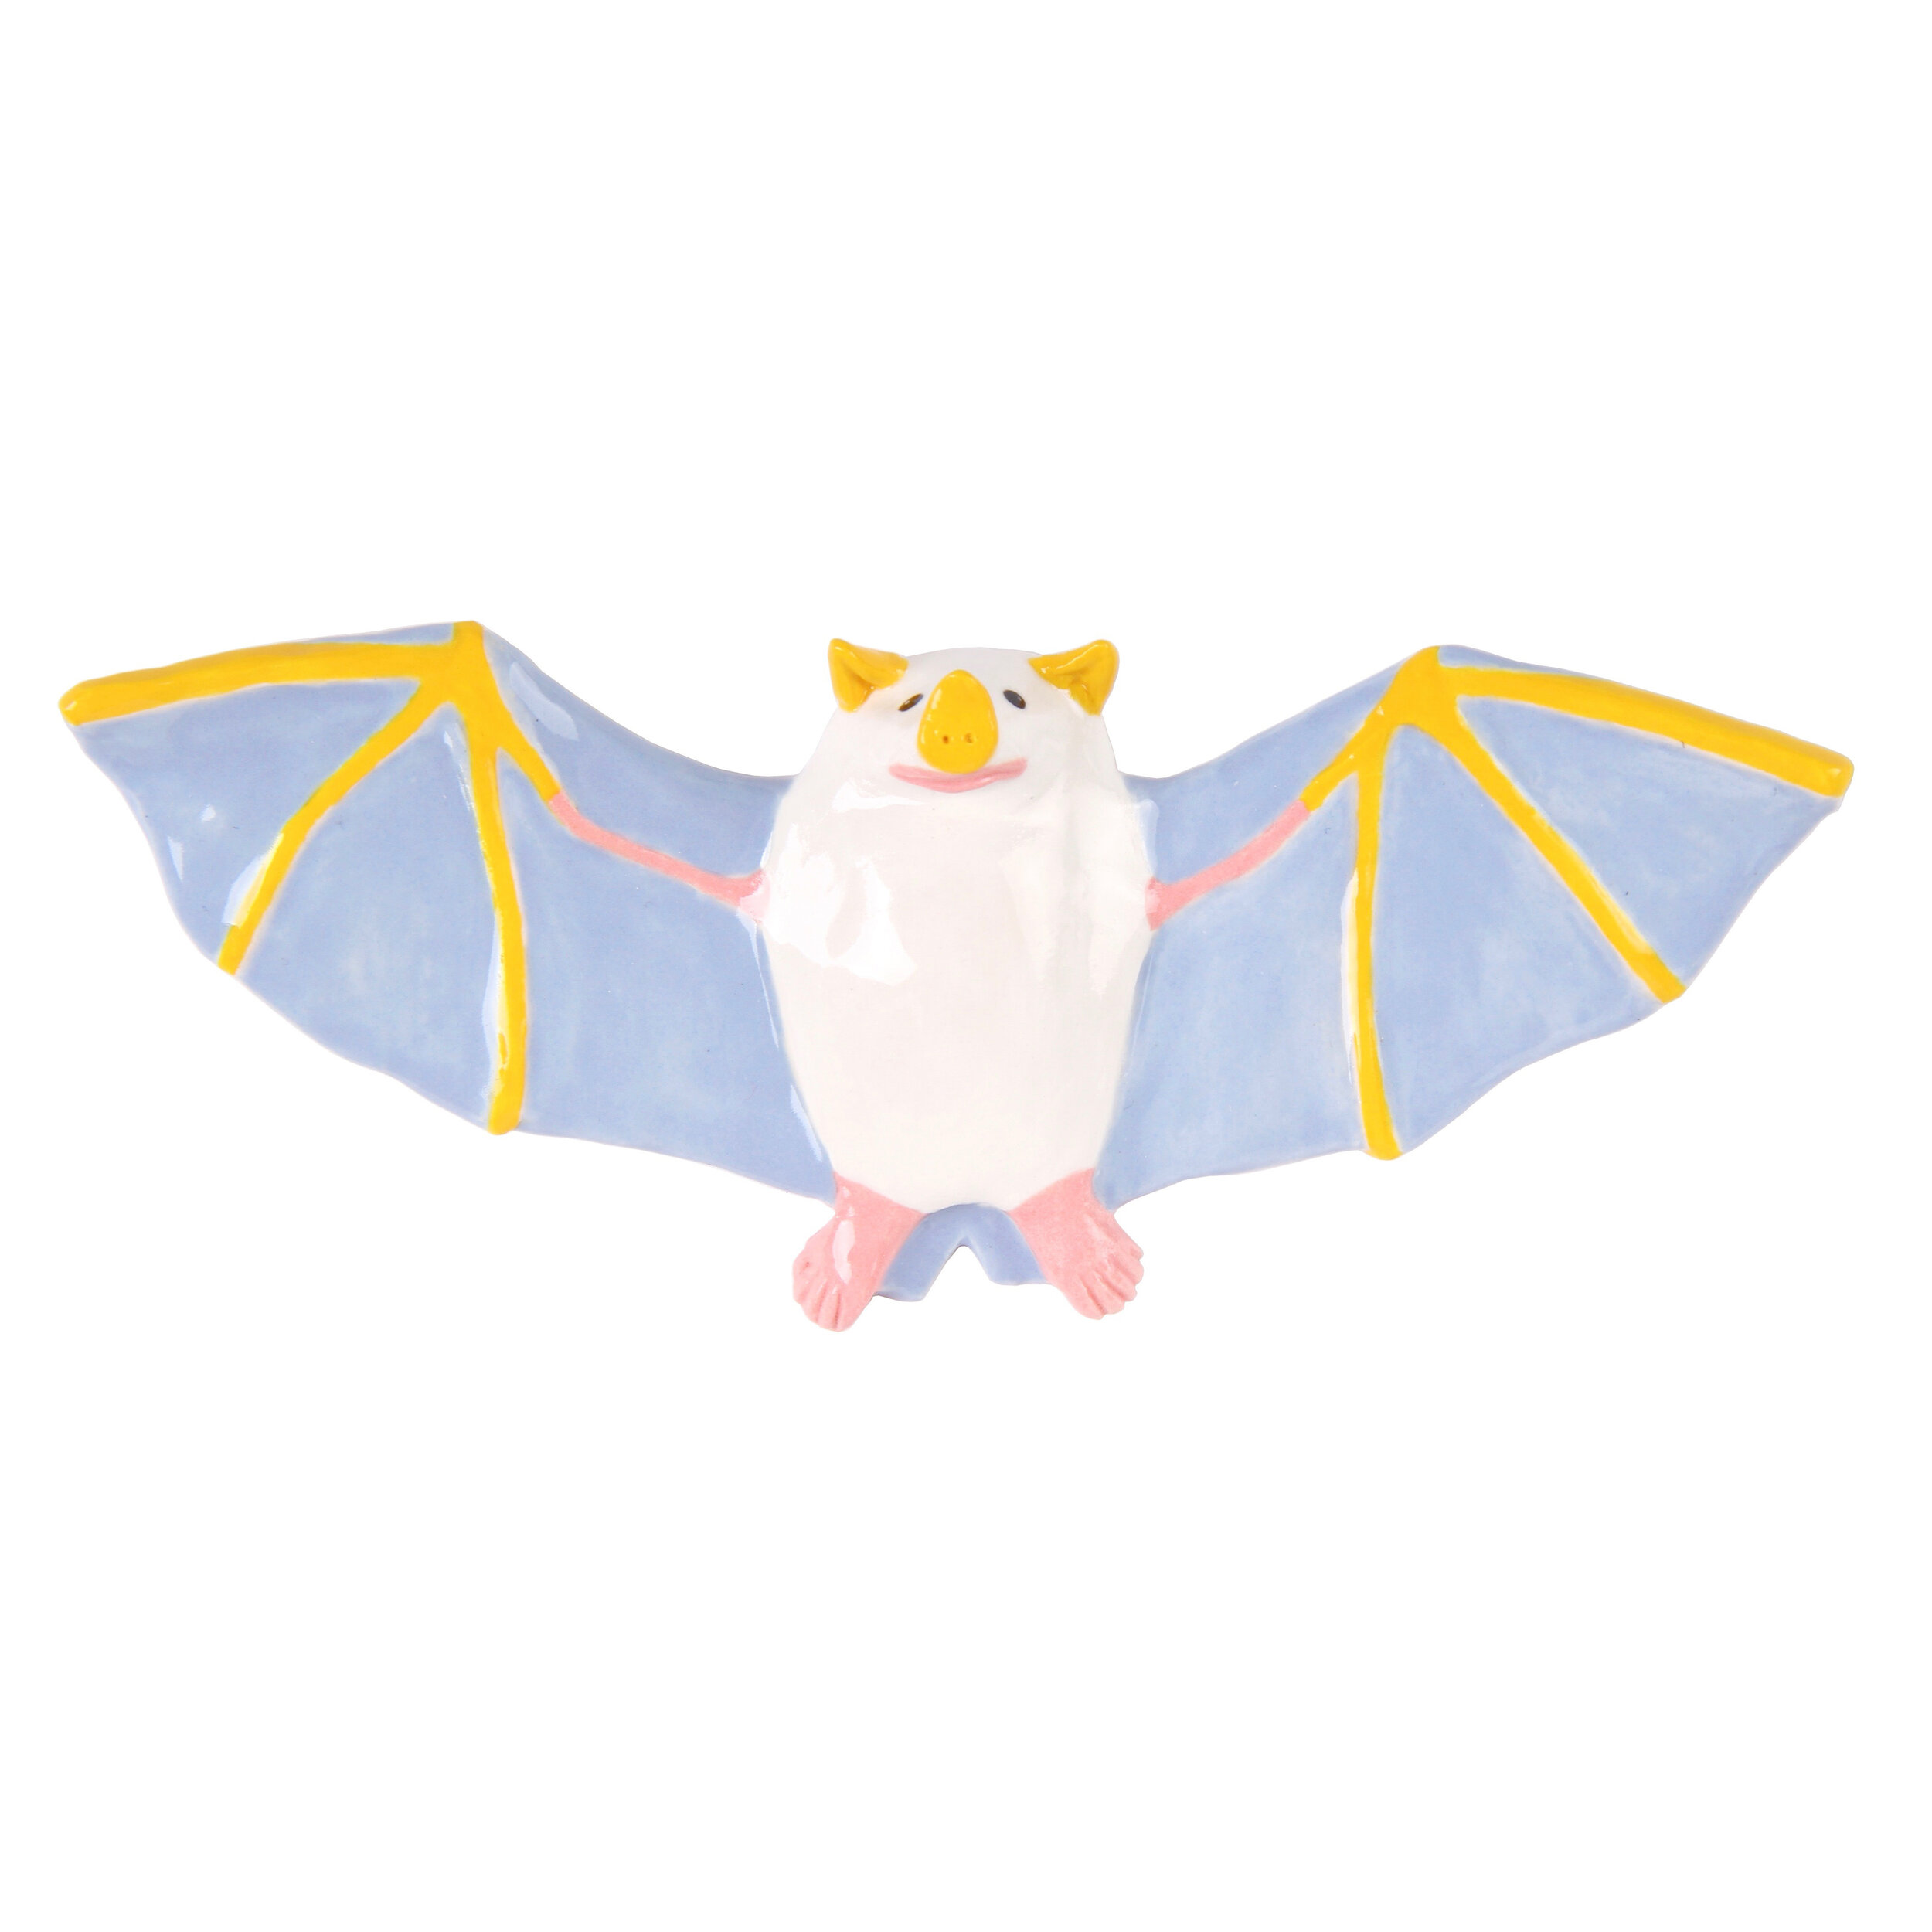 honduran white bat.jpg